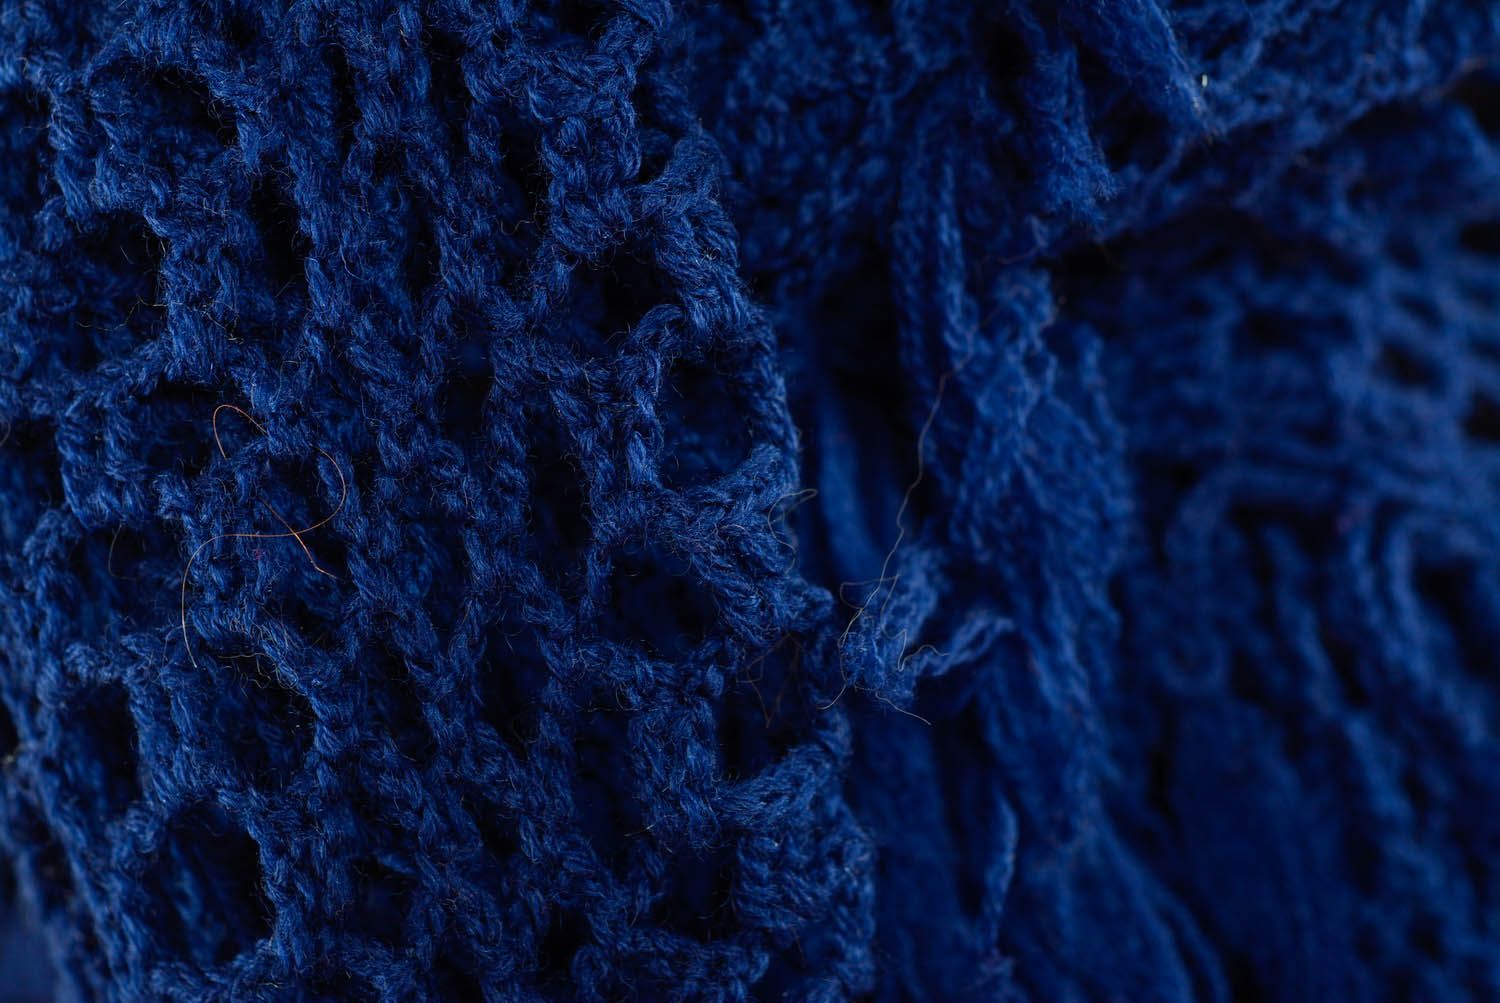 Xale delicado azul-escuro foto 4